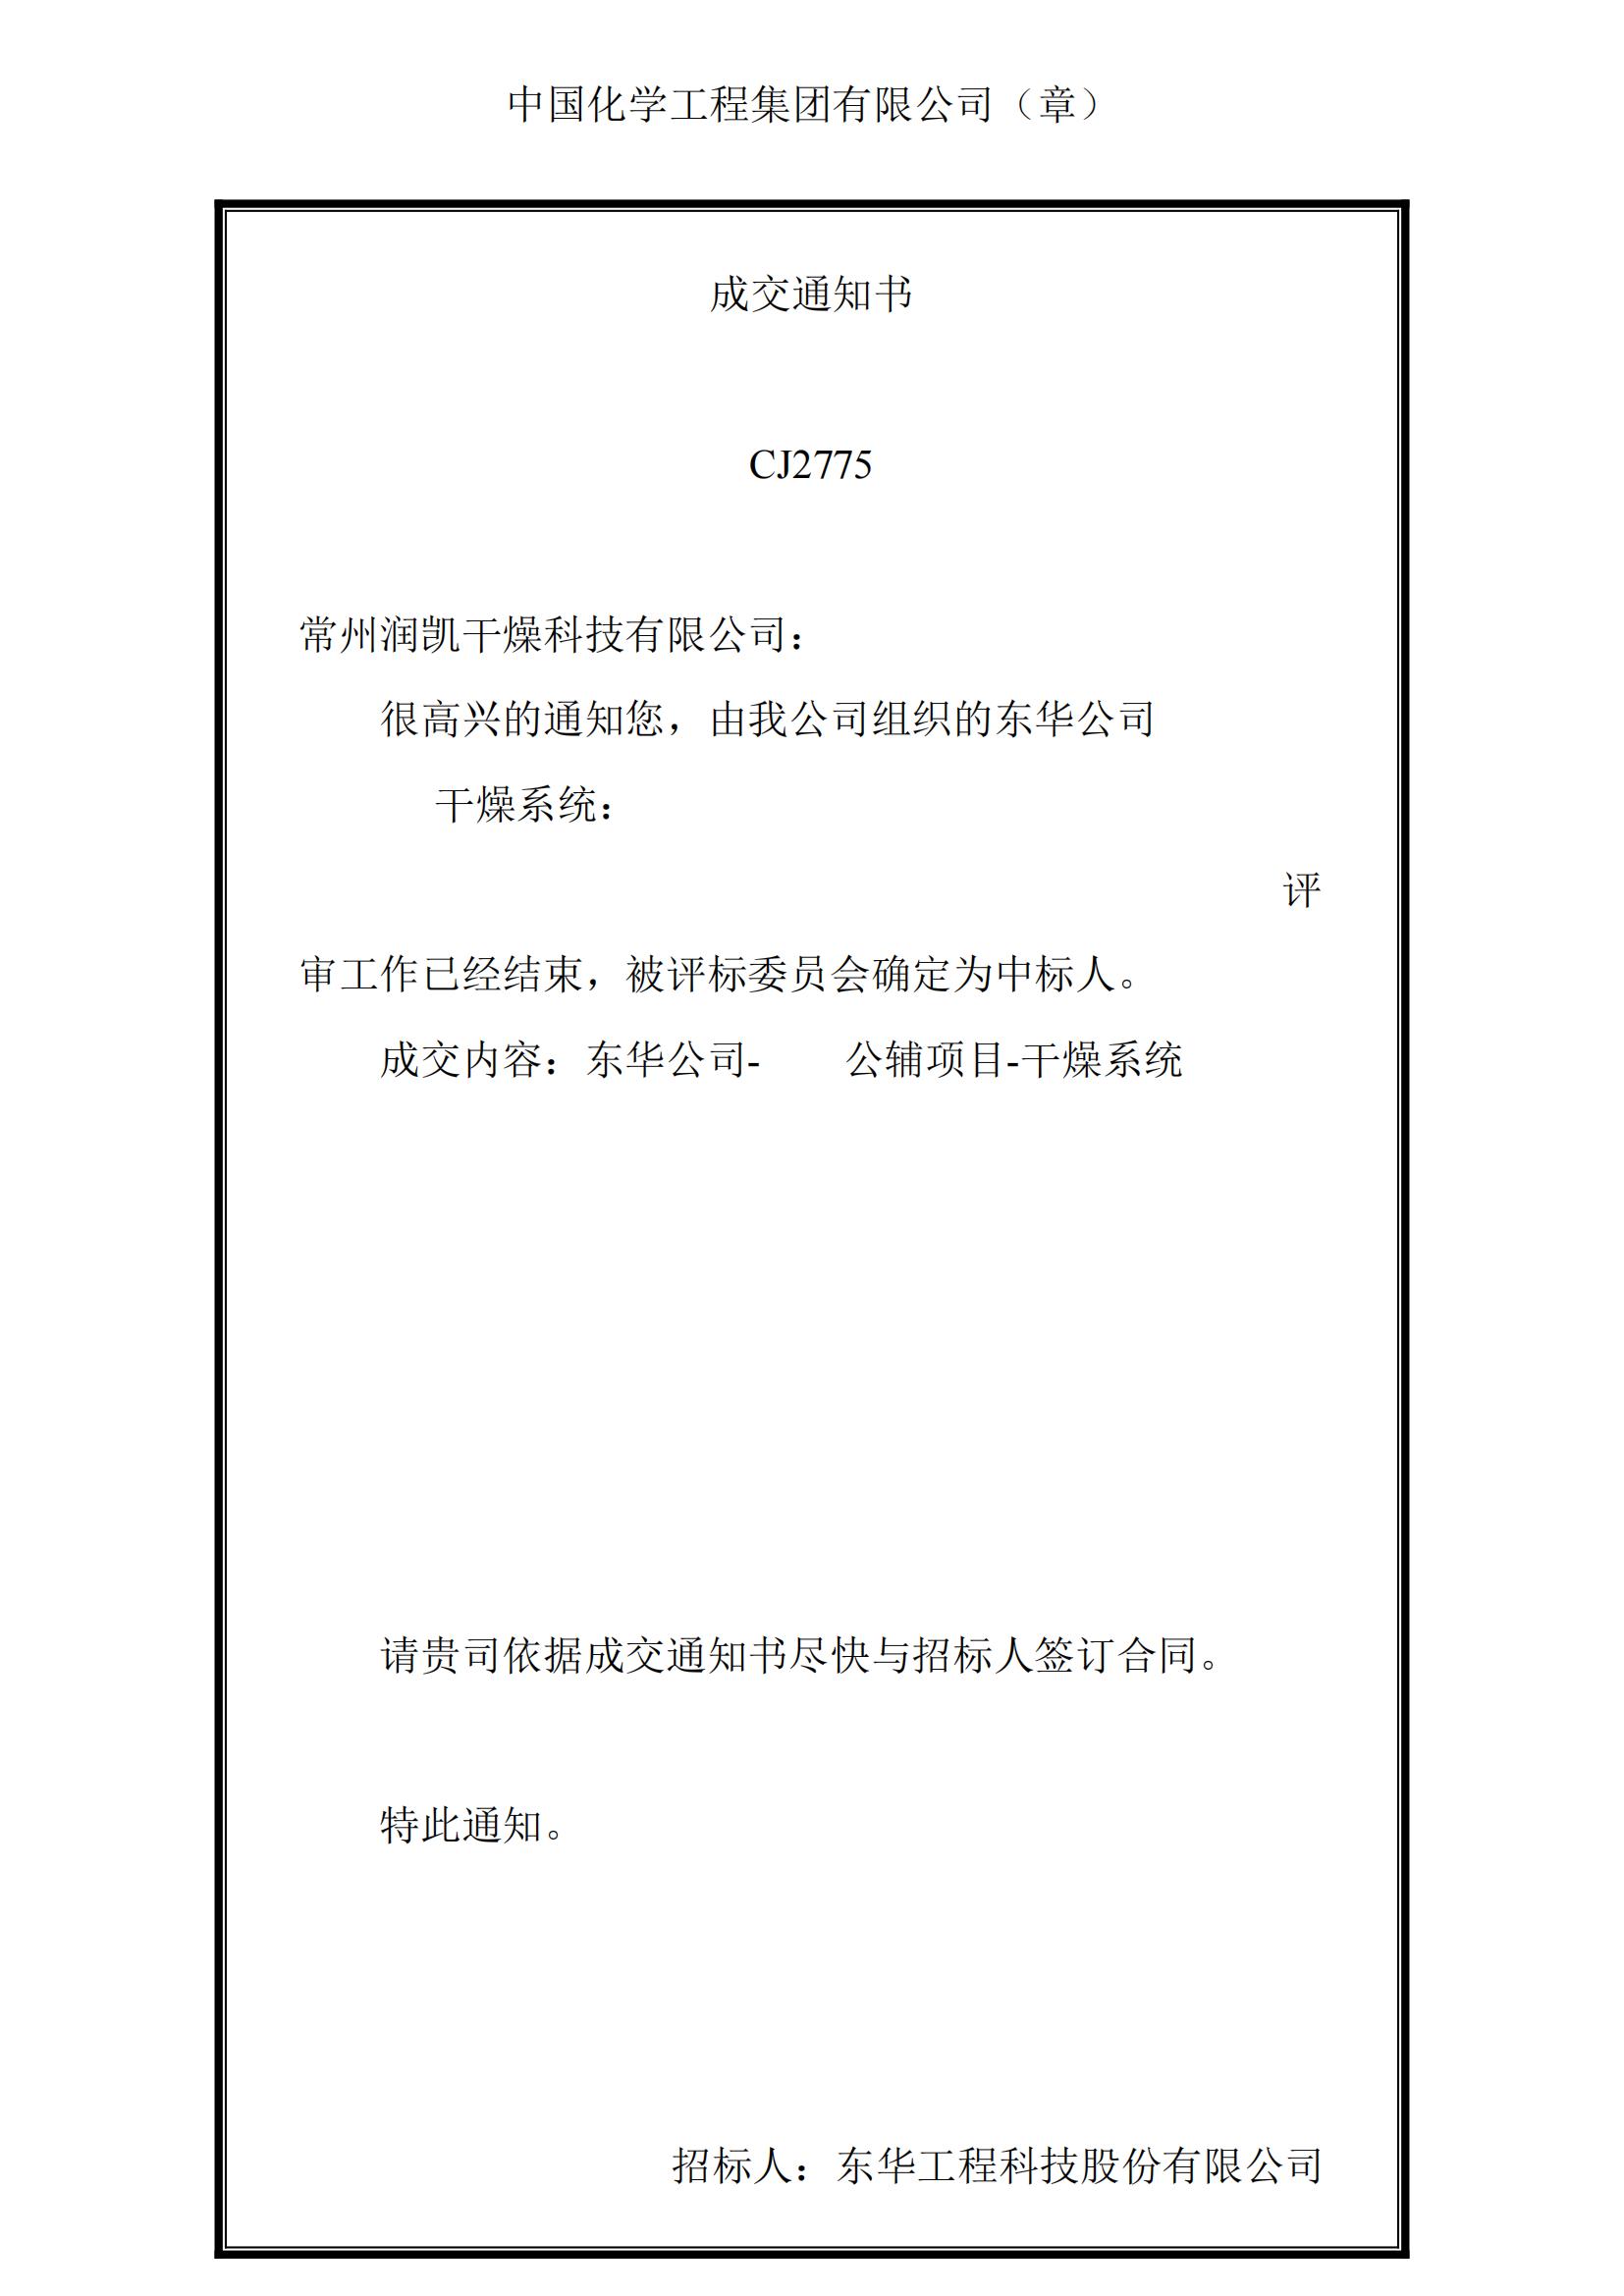 东华公司-华塑公辅项目-干燥系统通知书-副本_00(1)